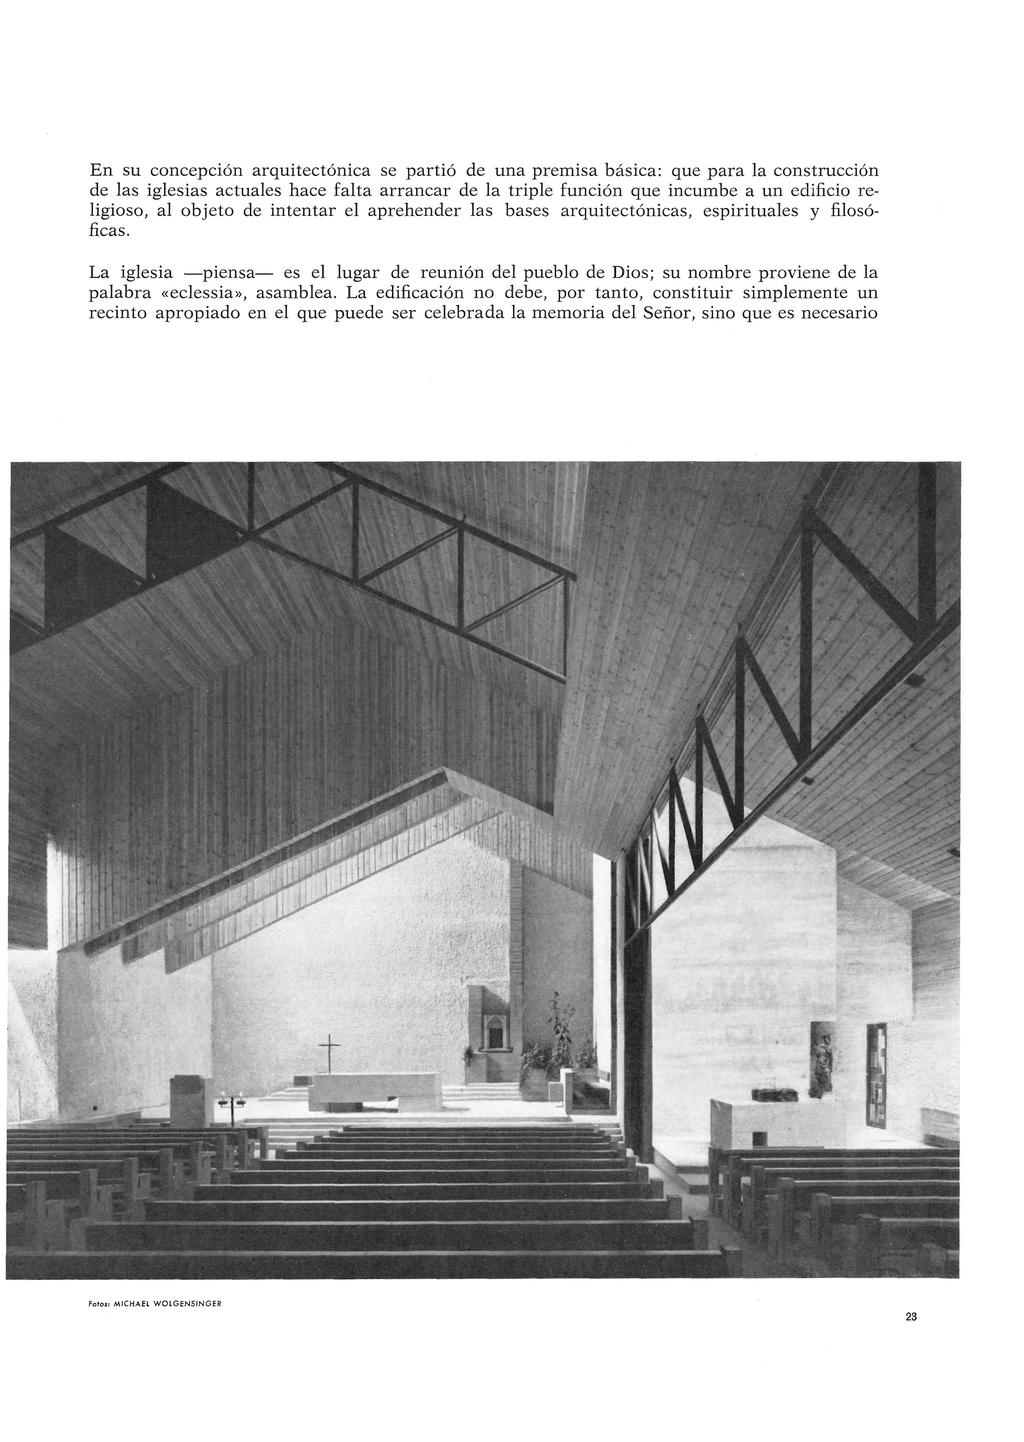 En su concepción arquitectónica se partió de una premisa básica: que para la construcción de las iglesias actuales hace falta arrancar de la triple función que incumbe a un edificio religioso, al